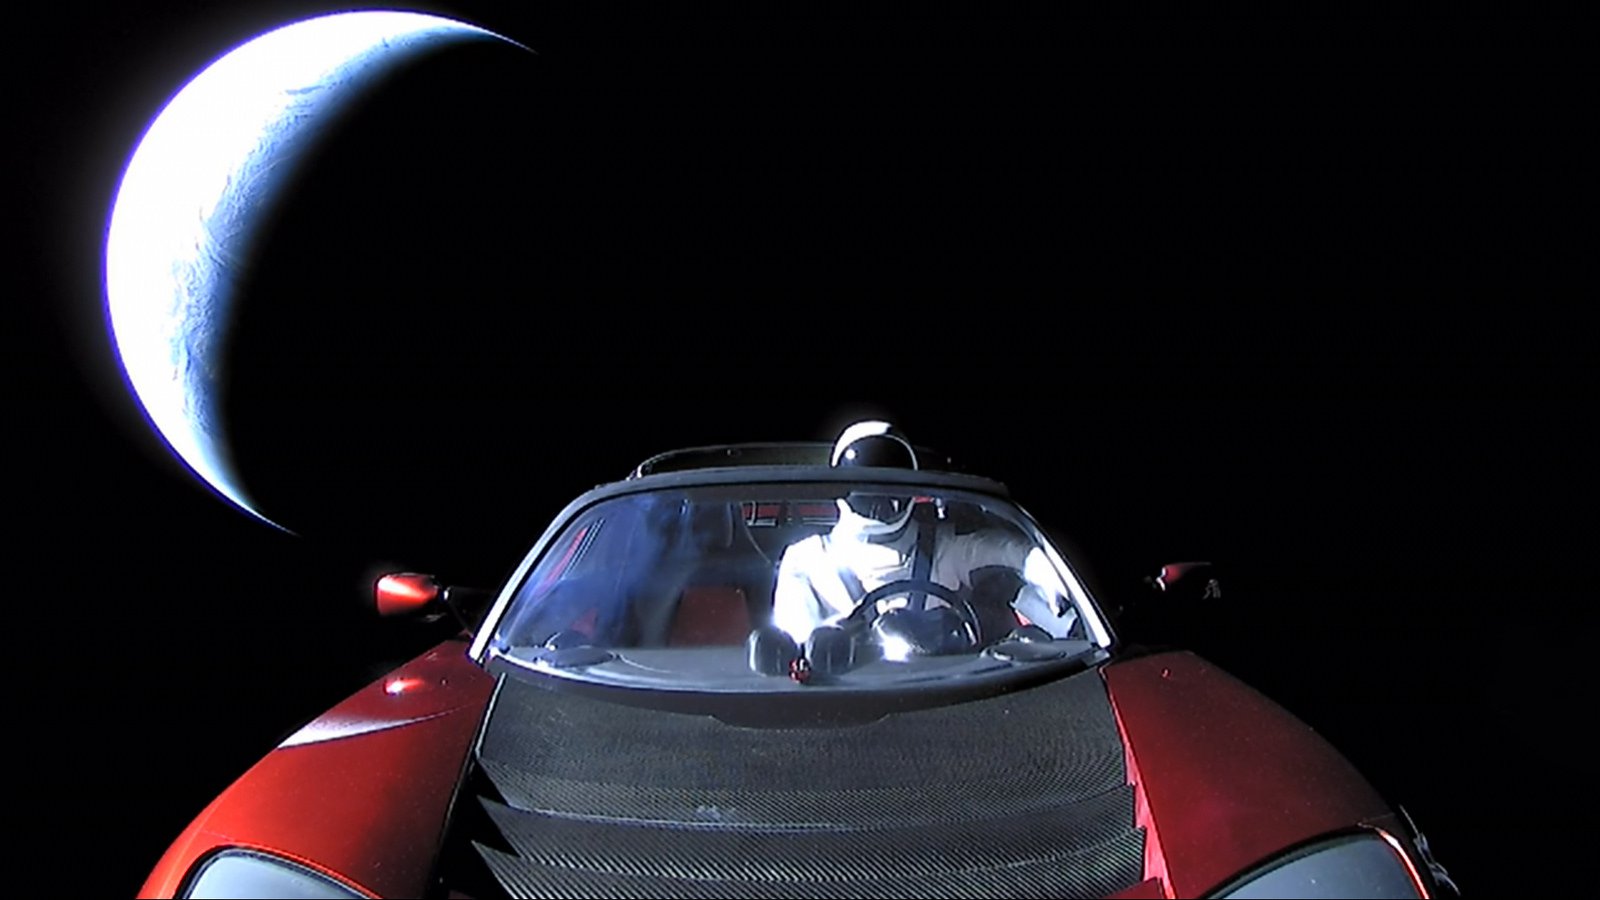 La NASA ha registrado formalmente el coche ilona Máscara como objeto astronómico